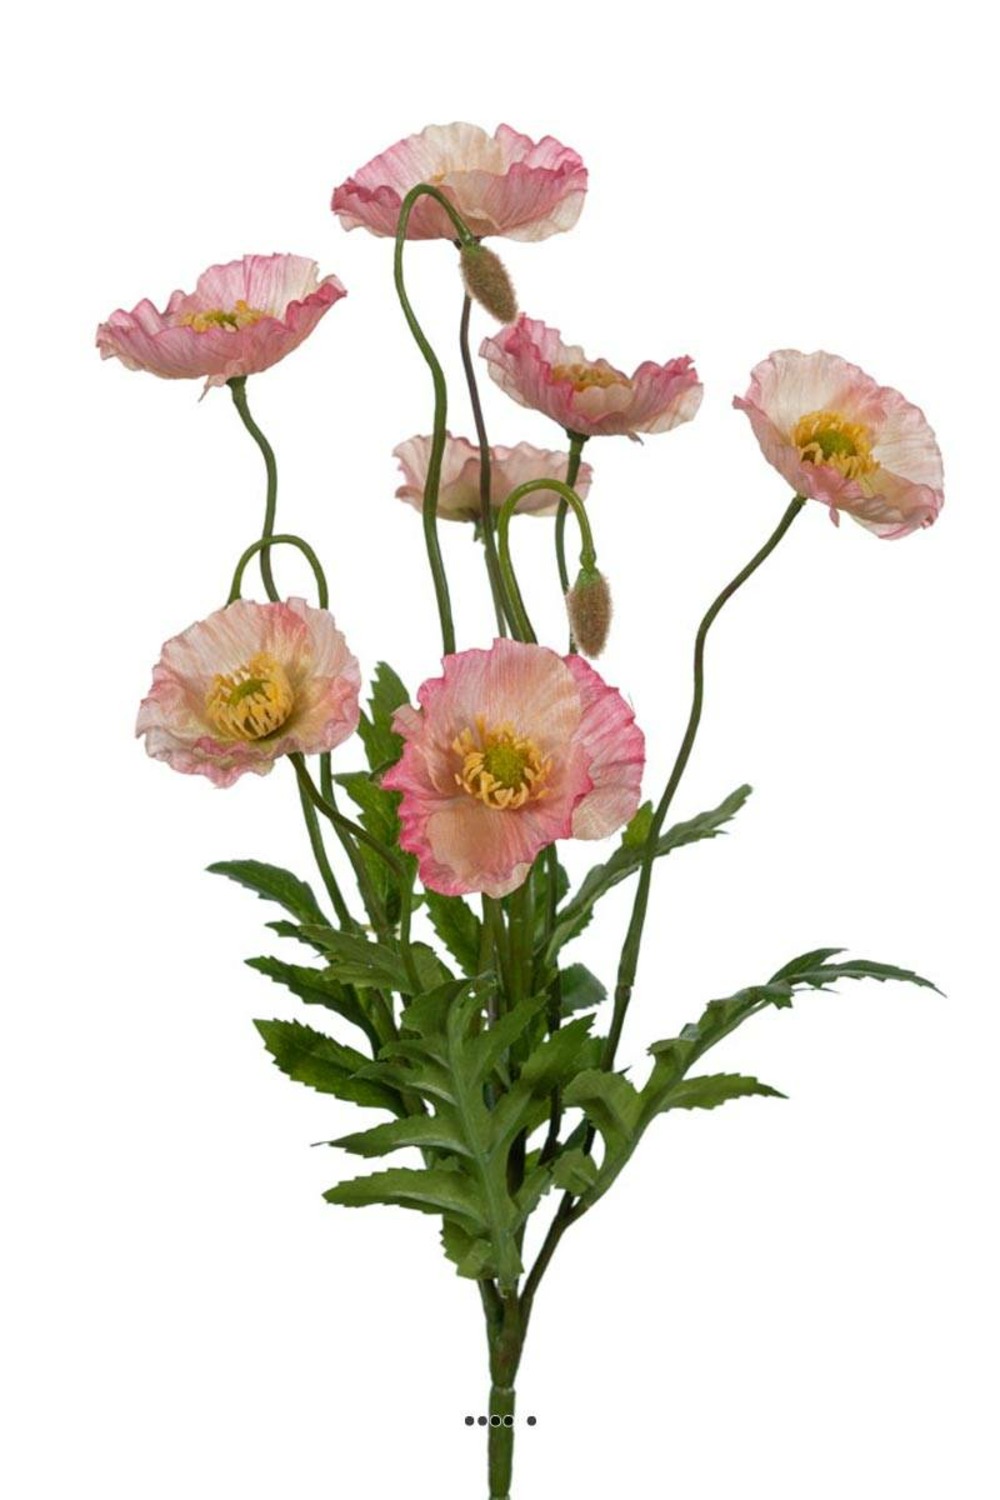 Pavots coquelicots factices en piquet 7fleurs h35cm d25cm rose soutenu - couleur